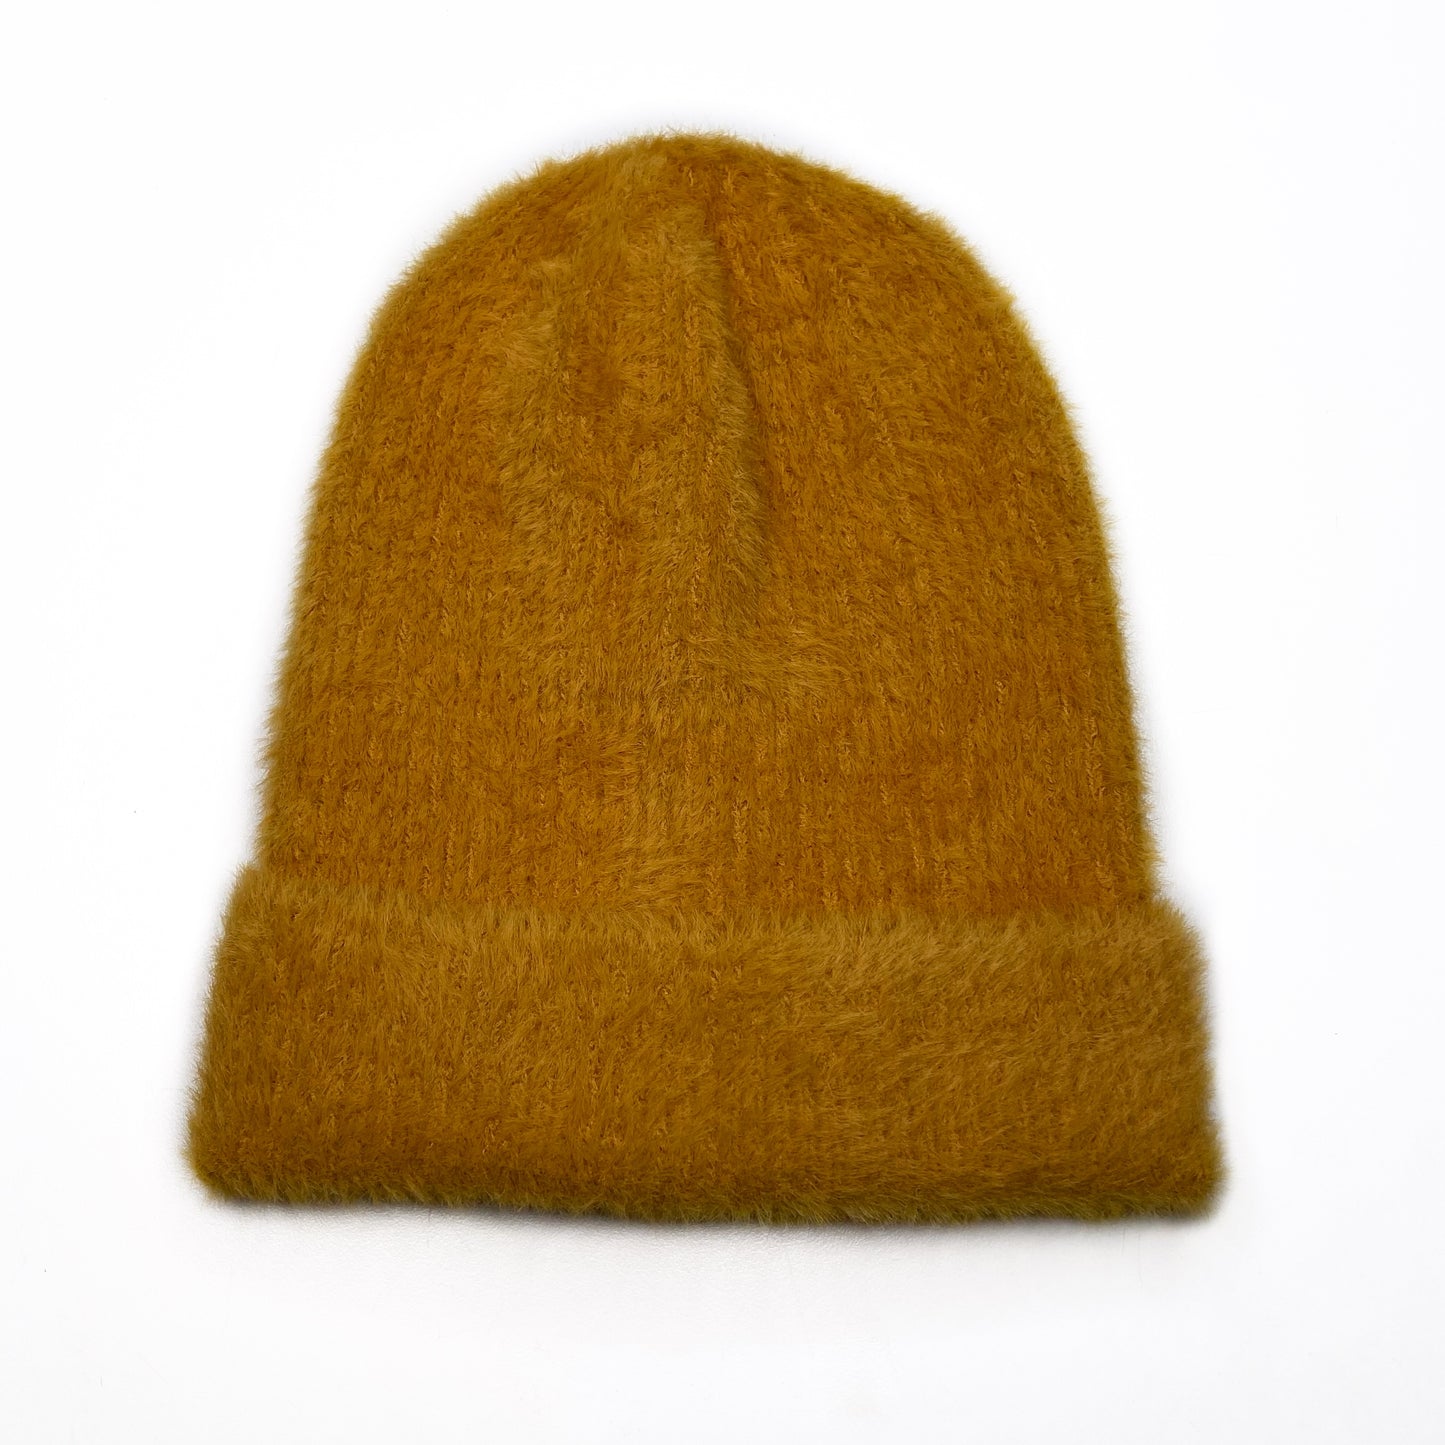 fuzzy beanie winter hat in golden yellow mustard